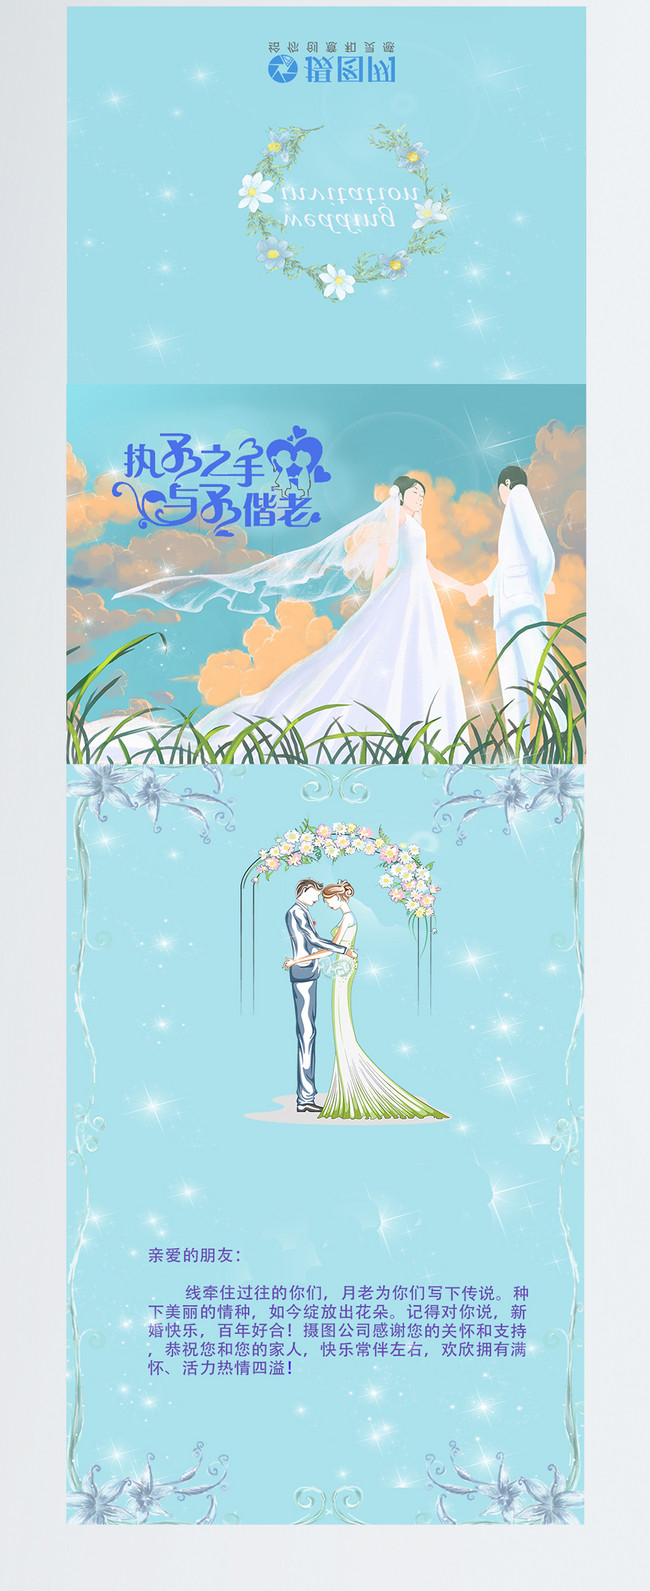 작고 상큼한 결혼 축하 카드 이미지 _사진 400782035 무료 다운로드_Lovepik.Com